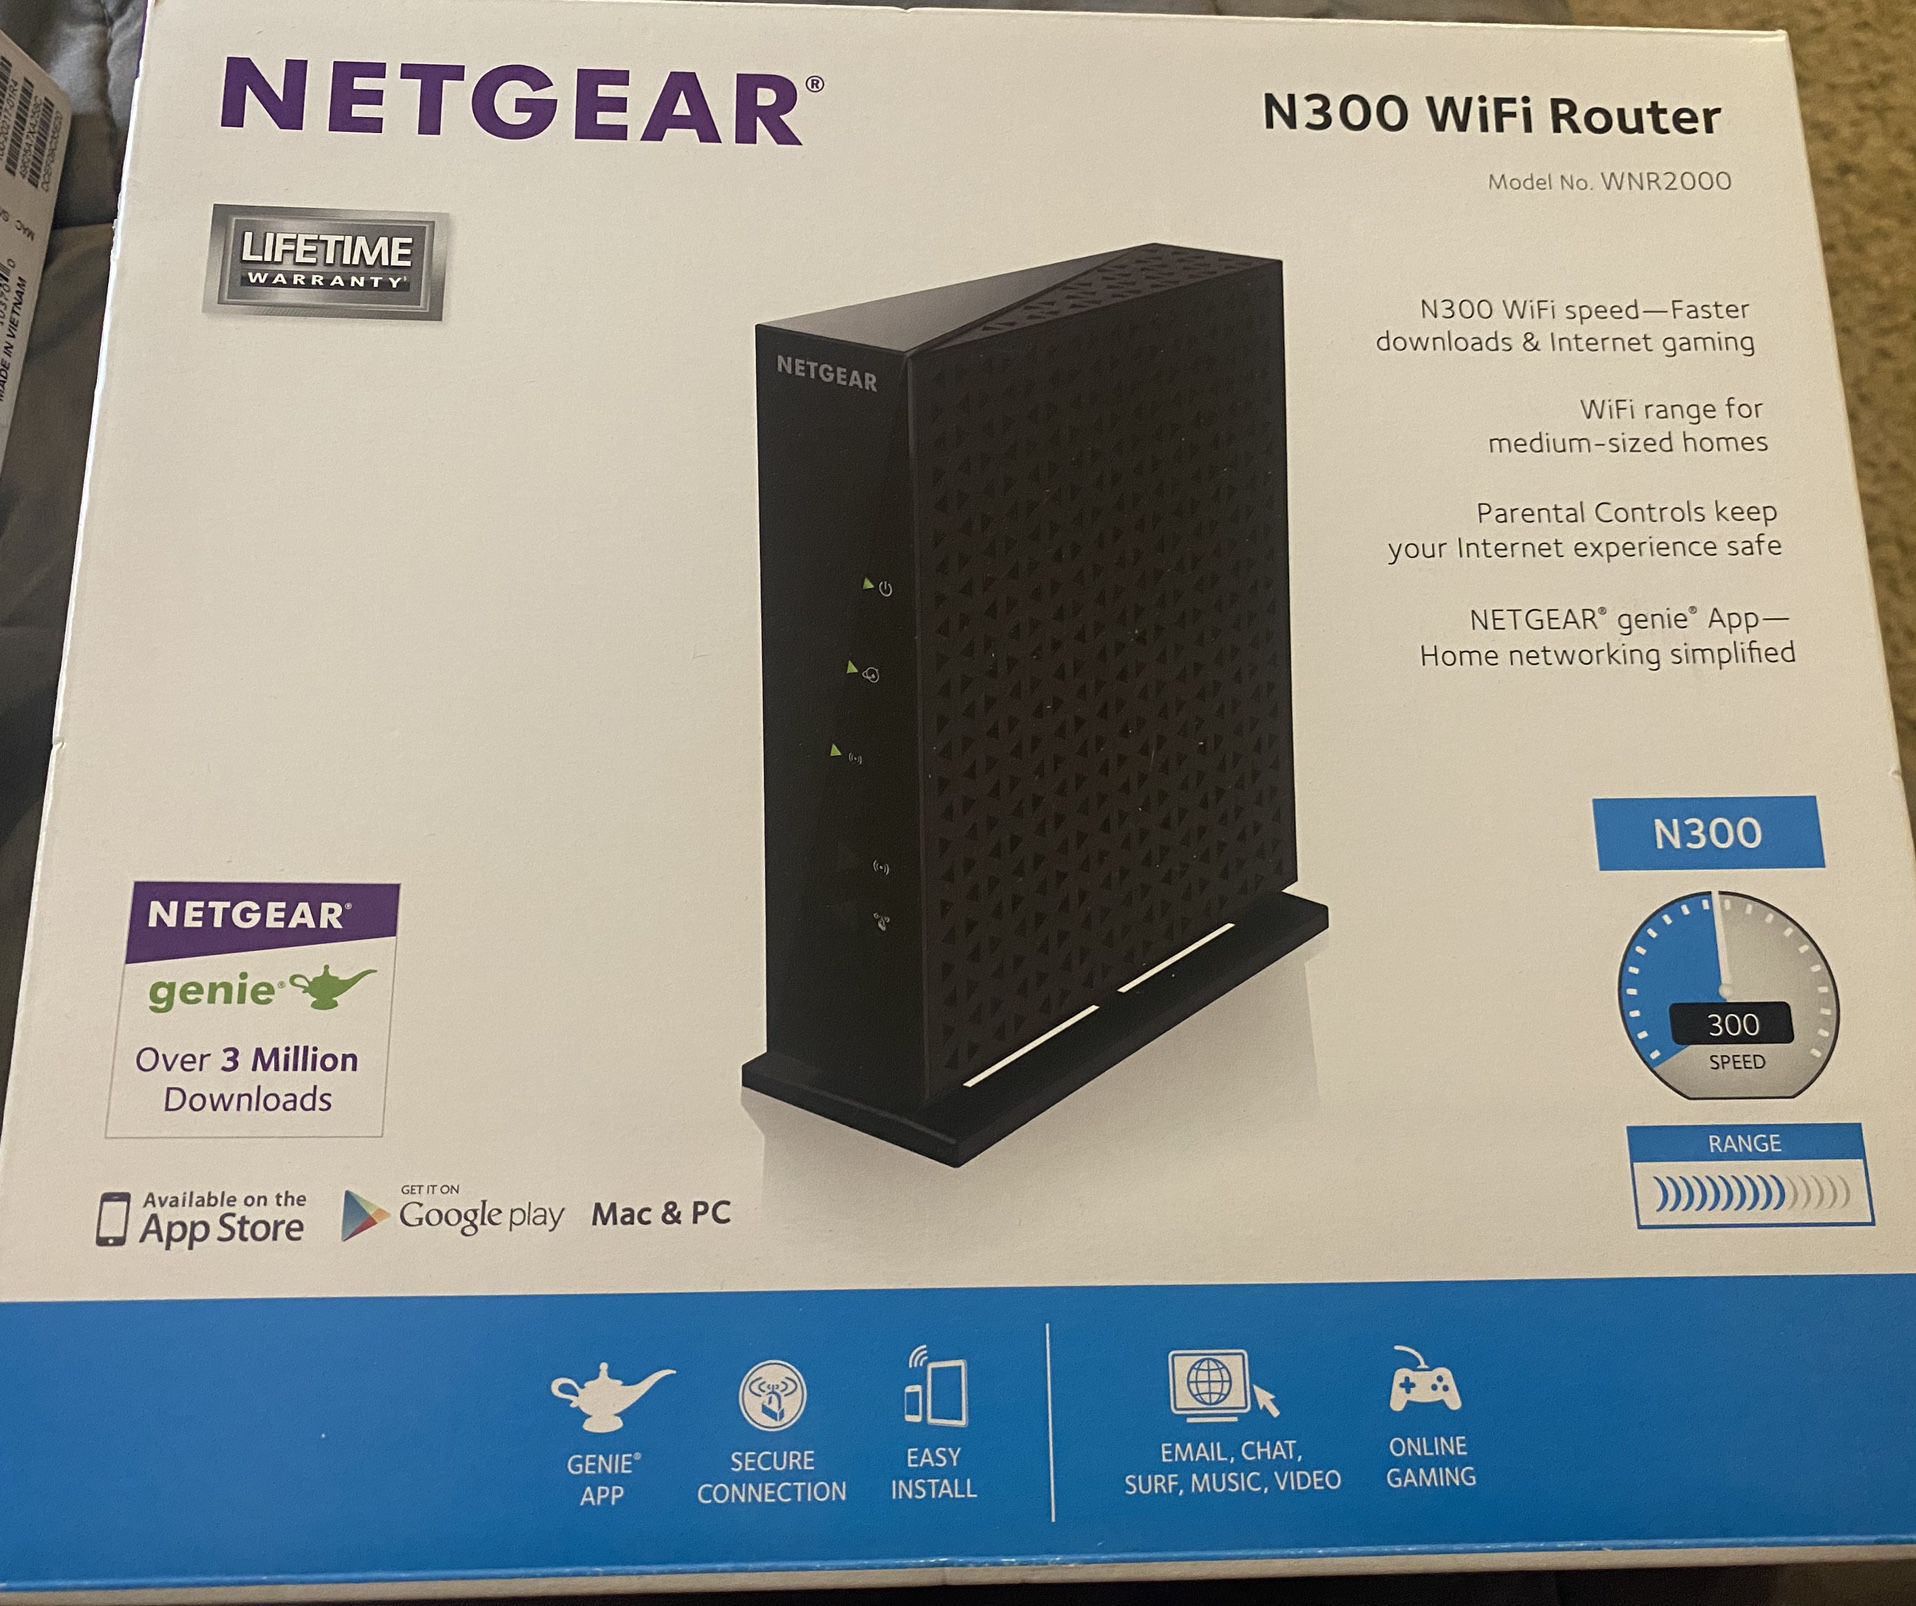 Netgear N300 Wi-Fi Router